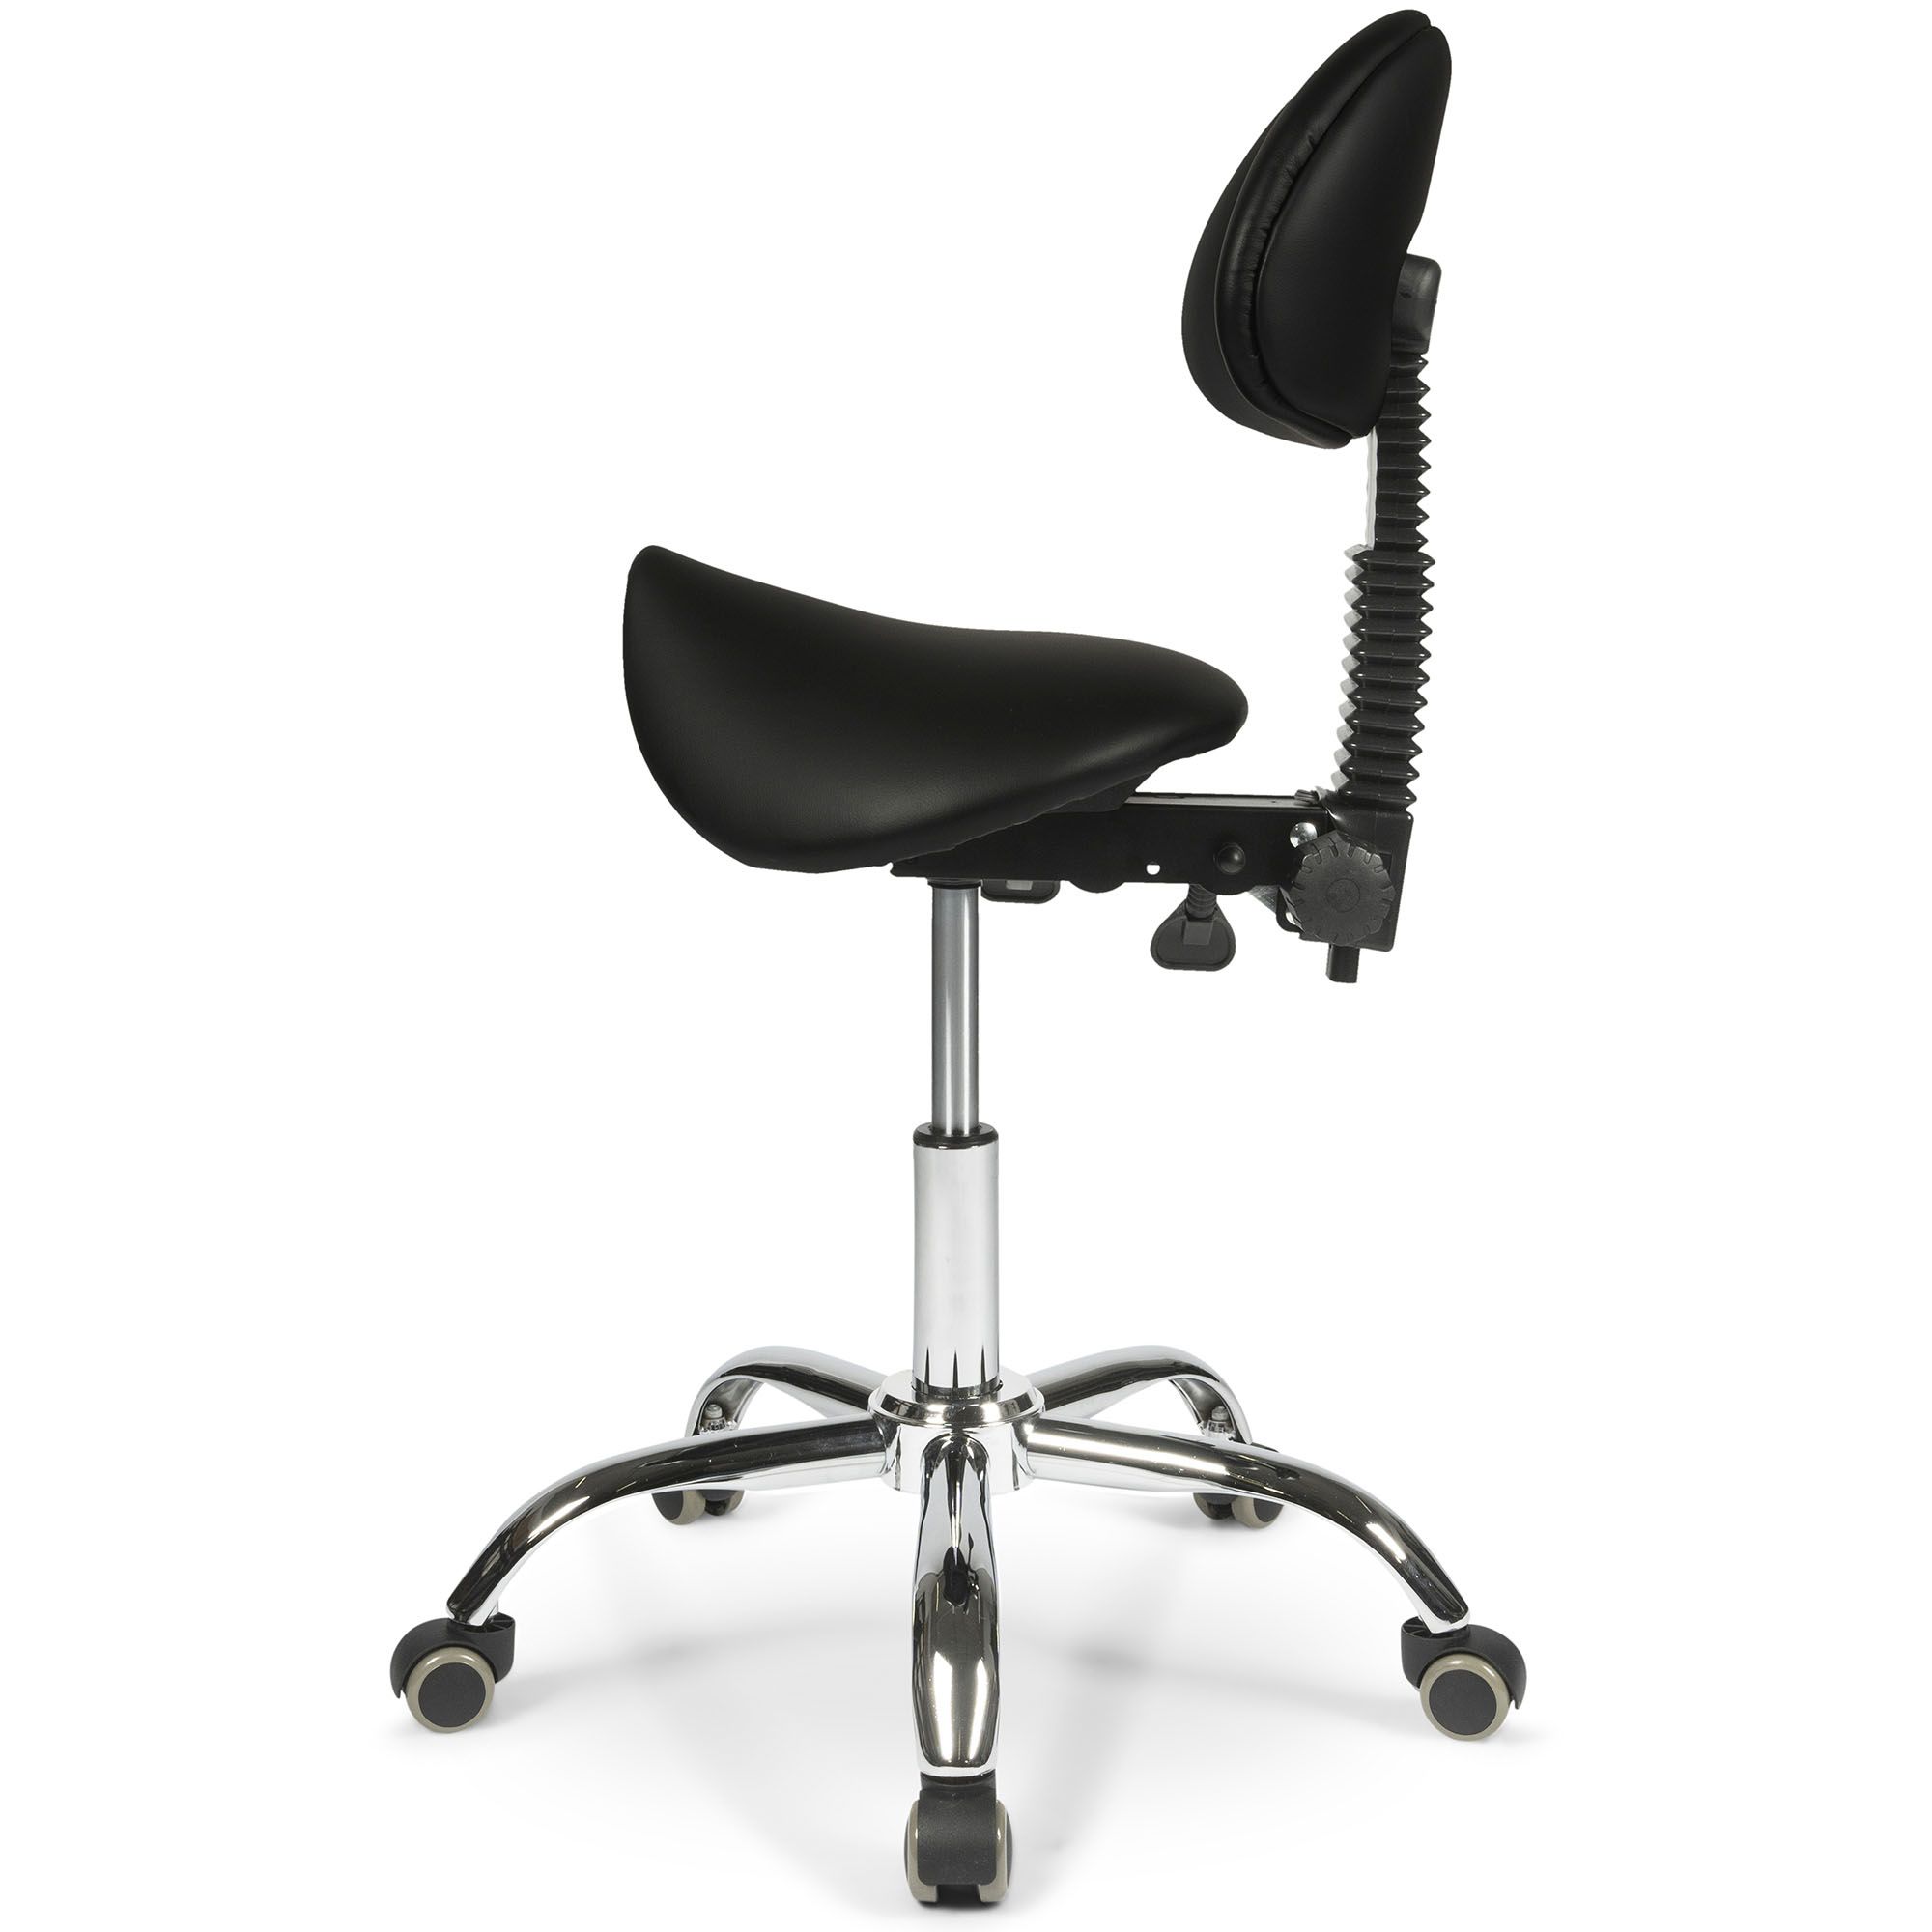 adjustment levers of the dunimed ergonomic saddle stool with backrest